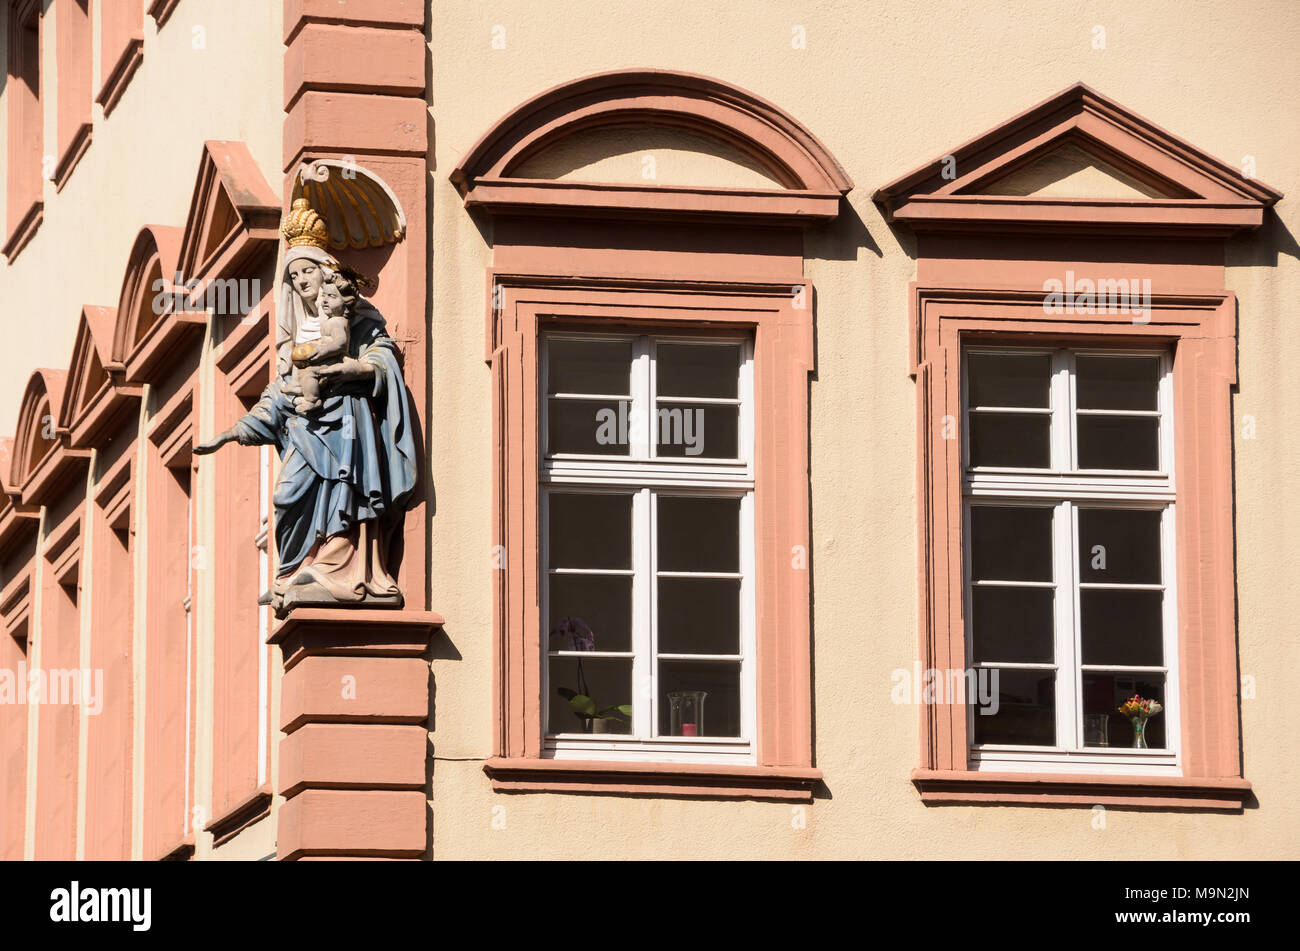 Madonna am Haus des Glockengießers Speck , Heidelberg, Baden-Württemberg, Deutschland, Europa Stock Photo